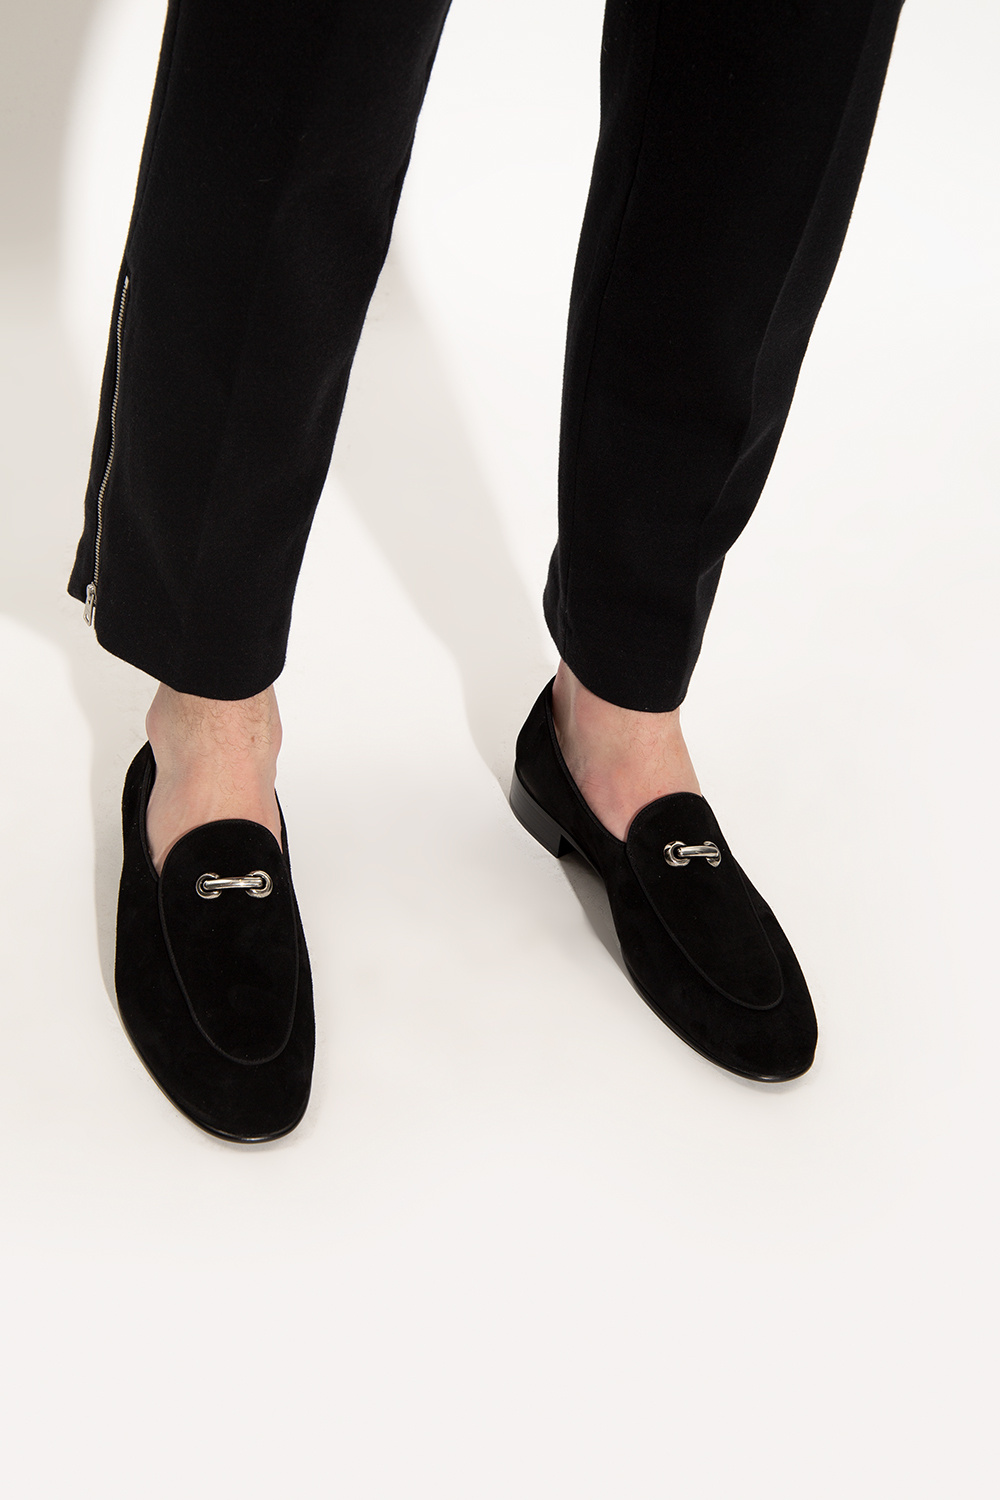 Ooze tro lys pære Giuseppe Zanotti 'Archibald' loafers | Men's Shoes | Vitkac